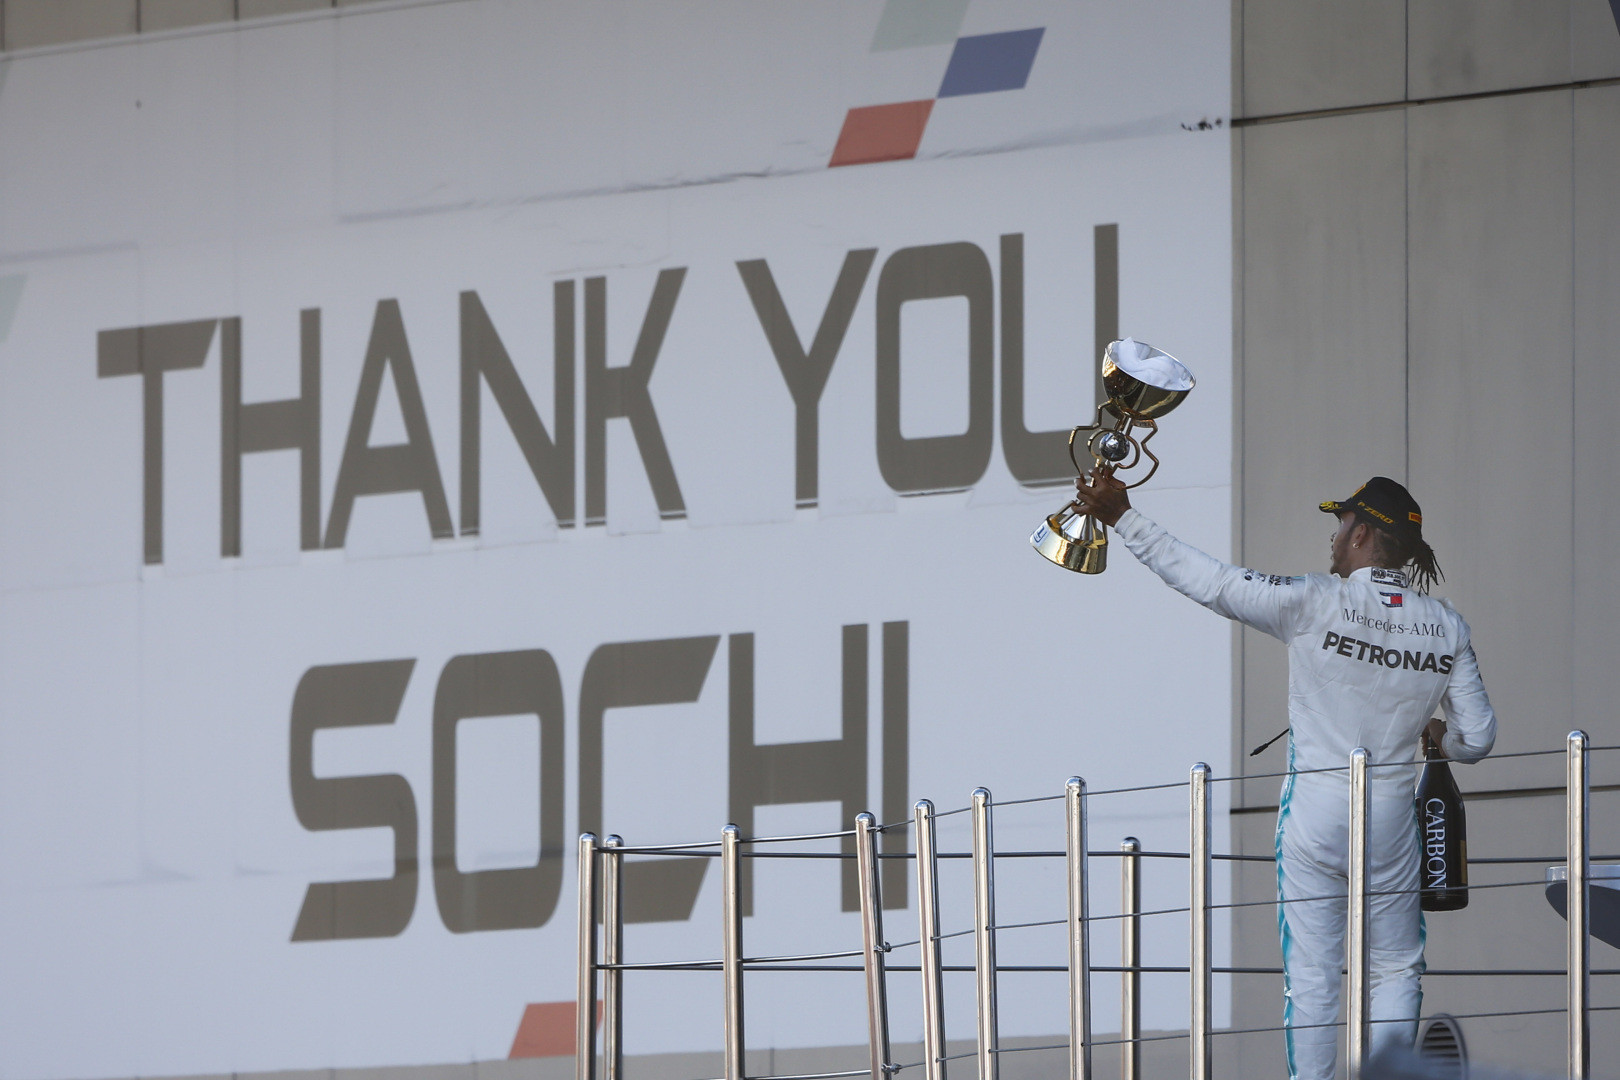 Формуле-1 в Сочи угрожает допинговый скандал